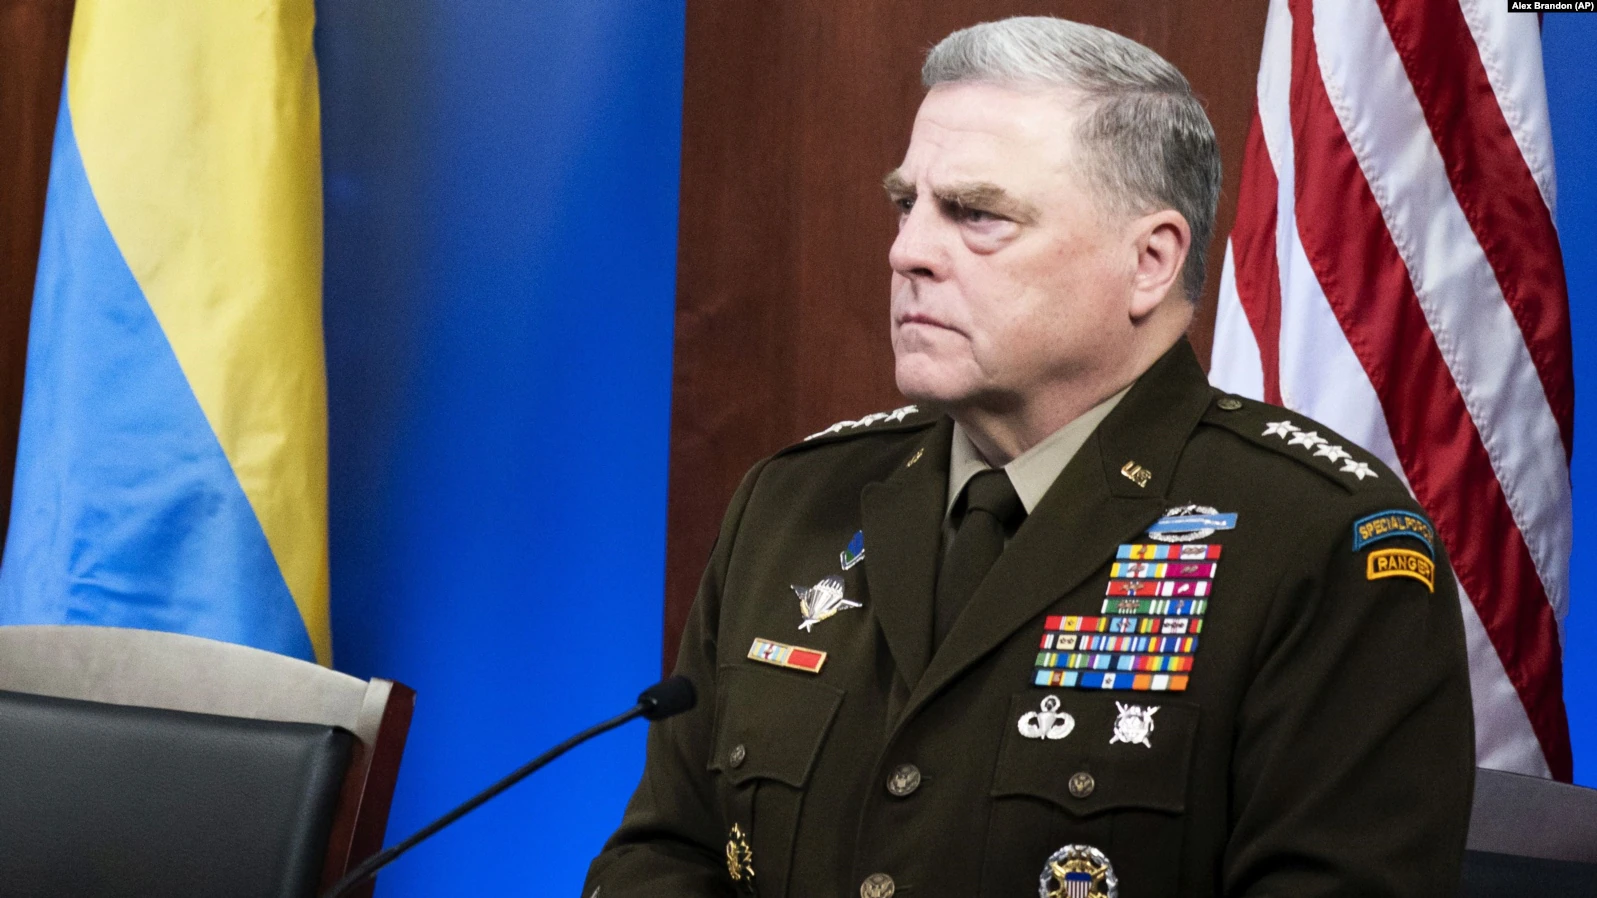 Gjenerali amerikan: Pushtimi rus i Ukrainës, dështim ushtarak